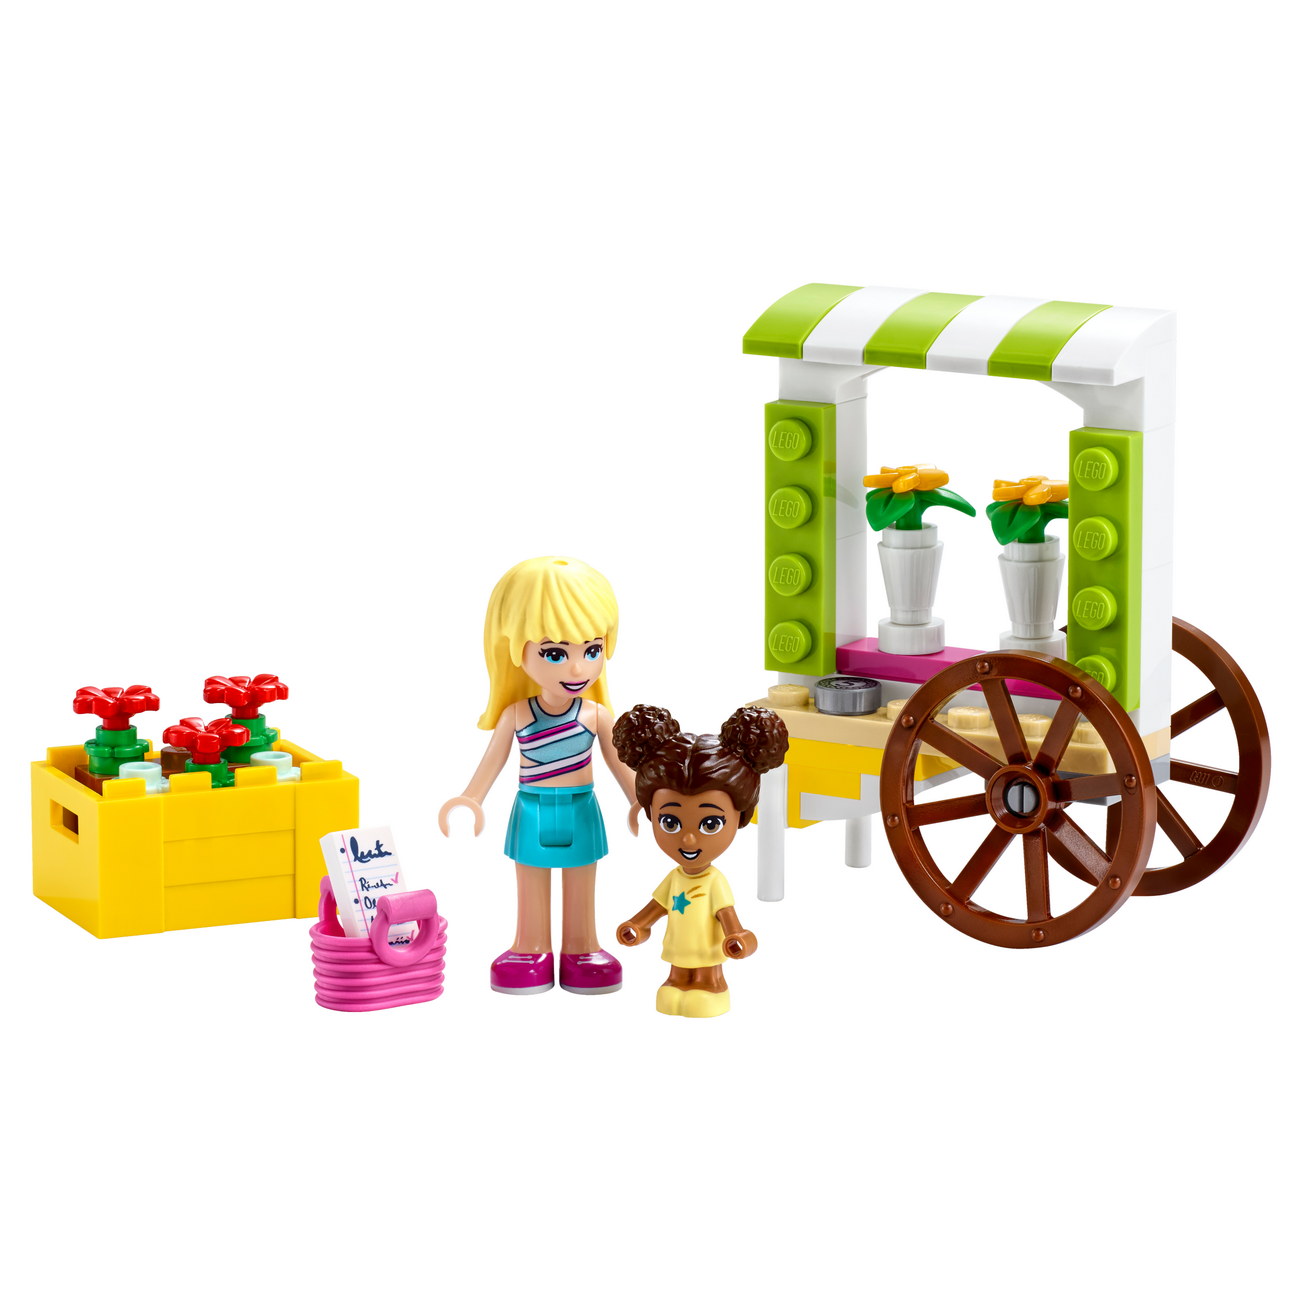 LEGO Friends - Blumenwagen (30413) - Polybag